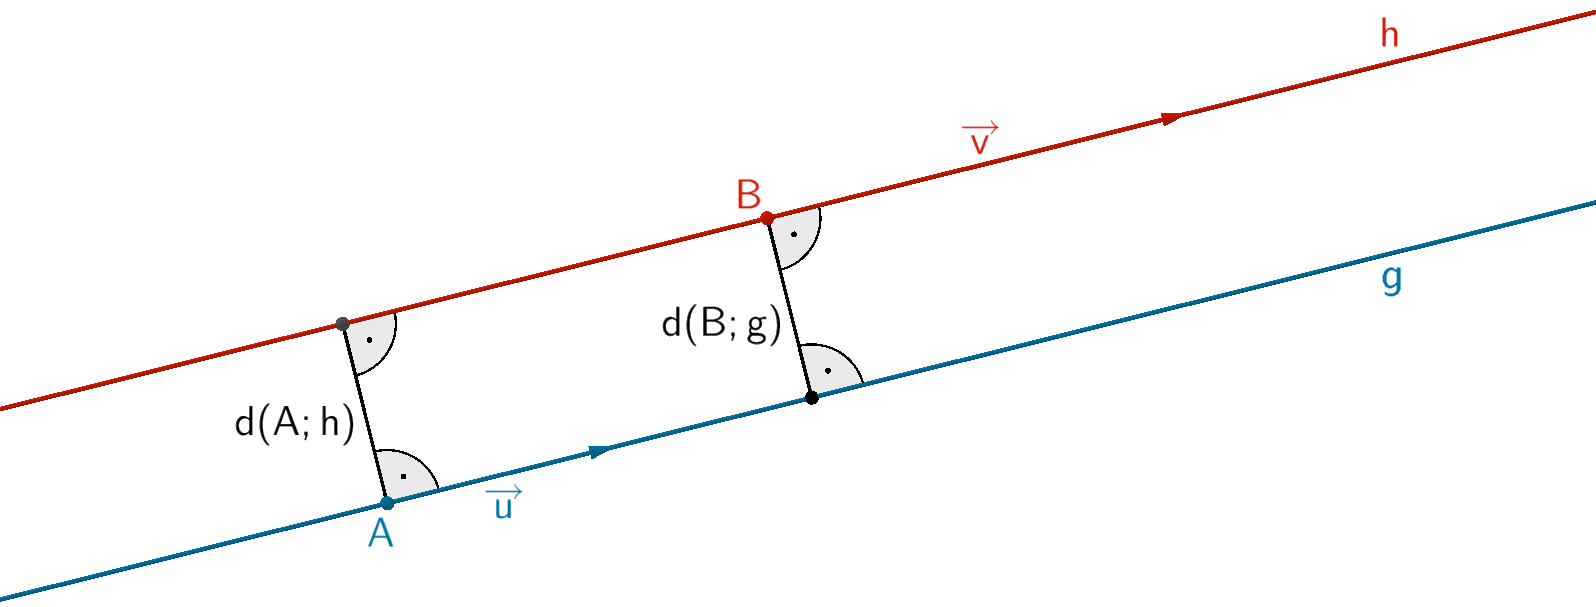 Abstand d(h;g) = d(P;g) = d(B;g) der parallelen Geraden g und h